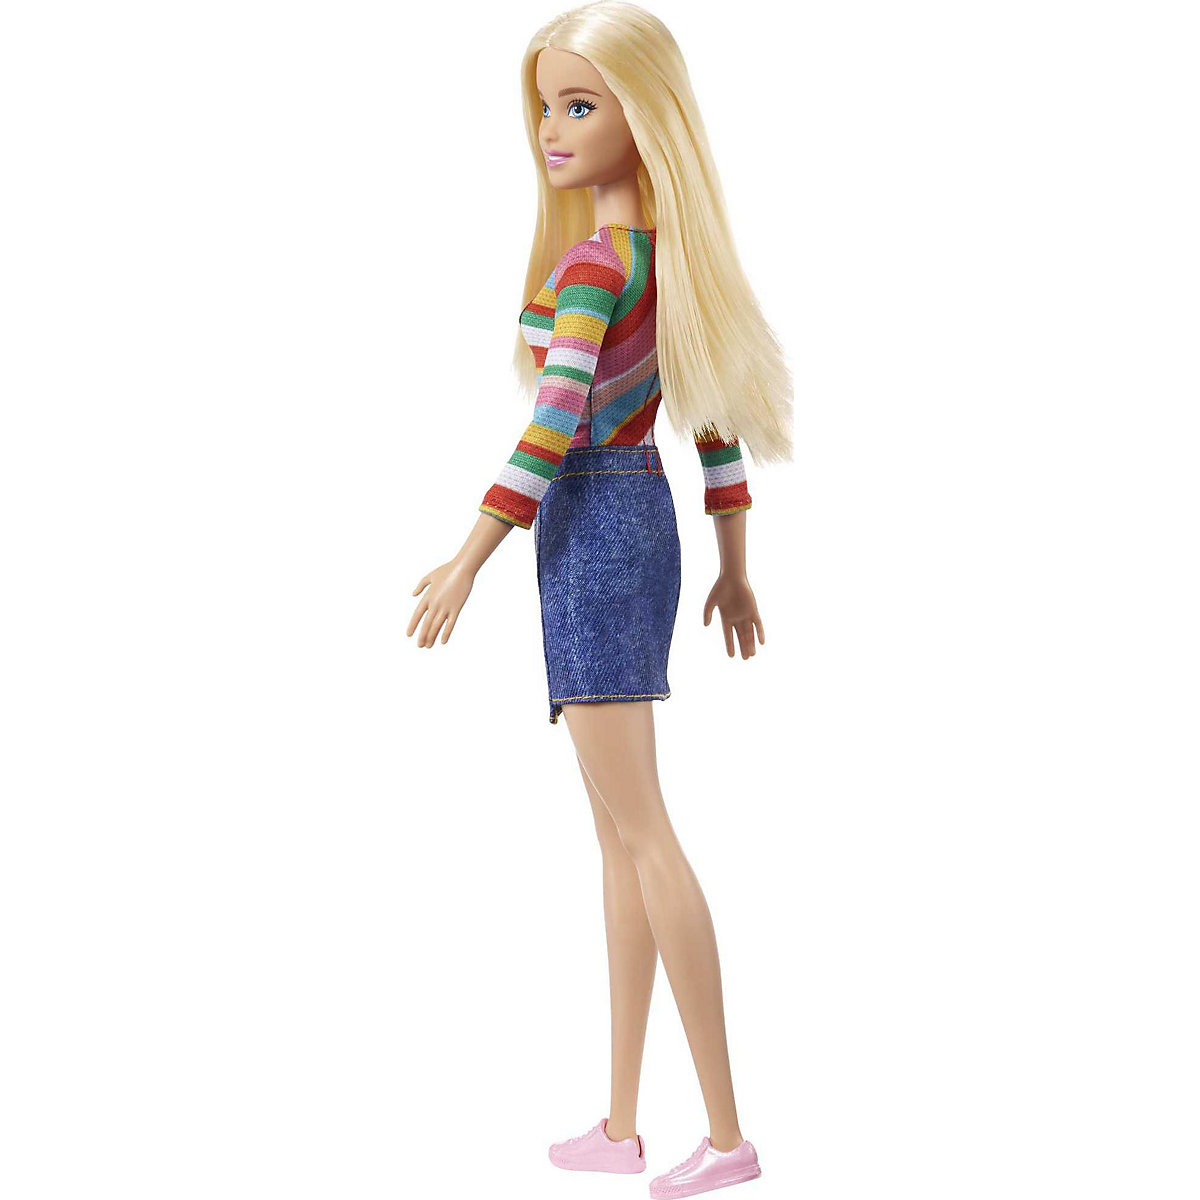 Barbie im Doppelpack“ Barbie Malibu“ Roberts-Puppe Spielzeug für Kinder ab 3 Jahren